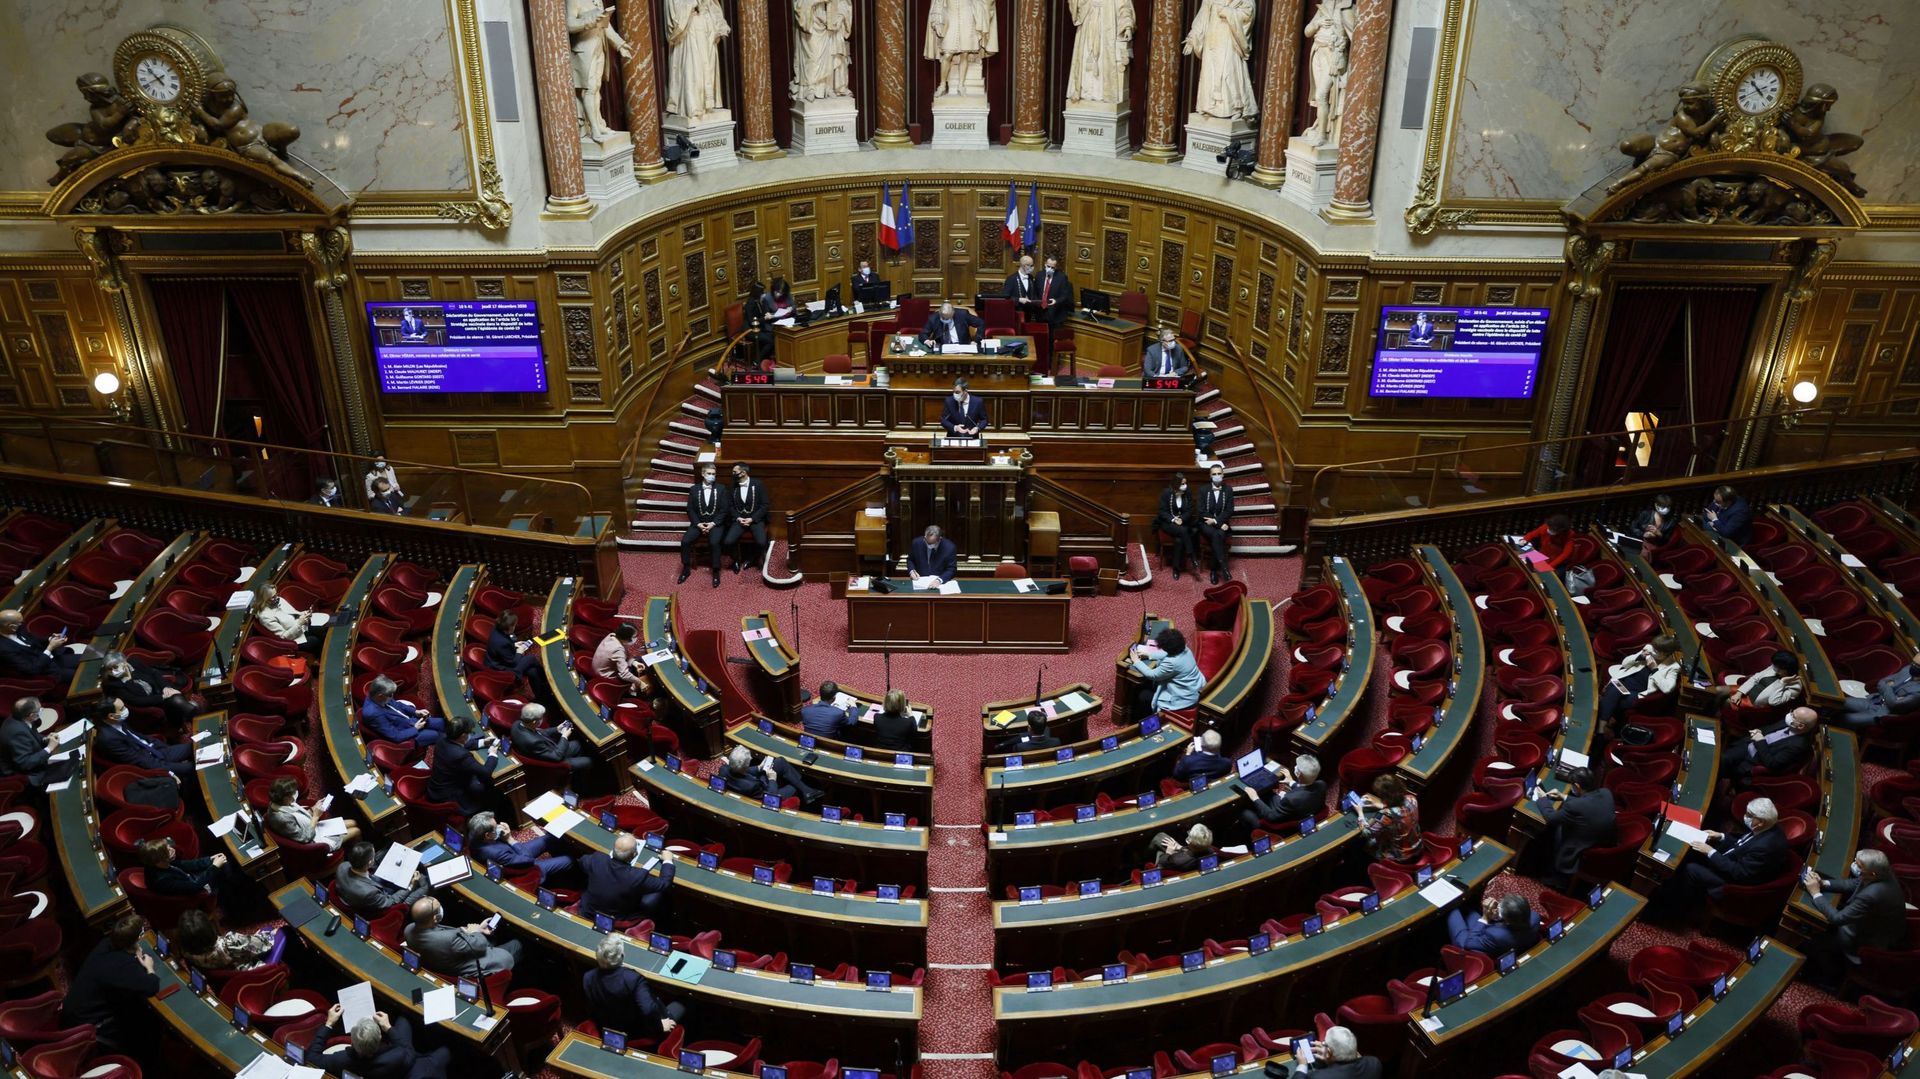 La ministre déléguée chargée de la Citoyenneté, Marlène Schiappa, a réaffirmé au Sénat que, comme cela a été annoncé au Parlement, les élections "se tiendront bien les 13 et 20 juin prochains".